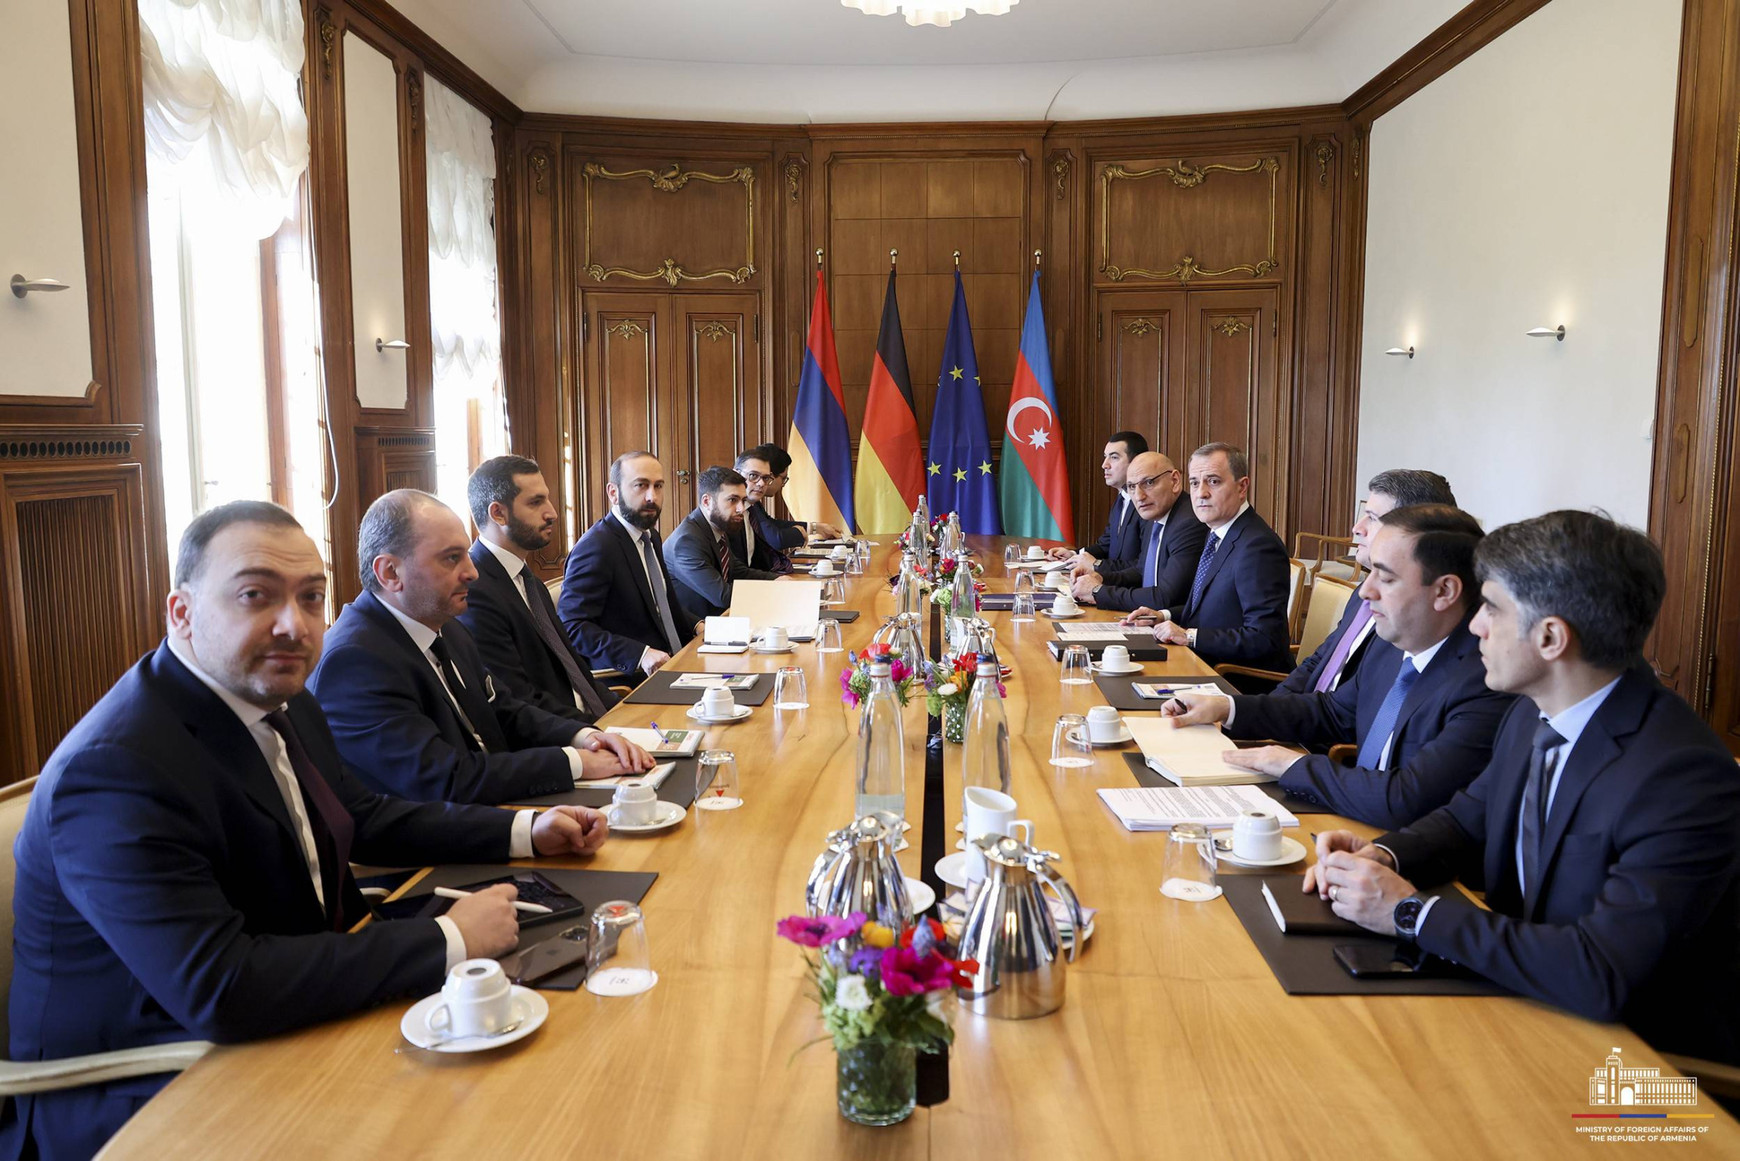 @Ministère des affaires étrangères d'Arménie Le Nakhitchevan, nouvel objectif de l'Azerbaïdjan après le Haut-Karabakh ? - Taline Ter Minassian